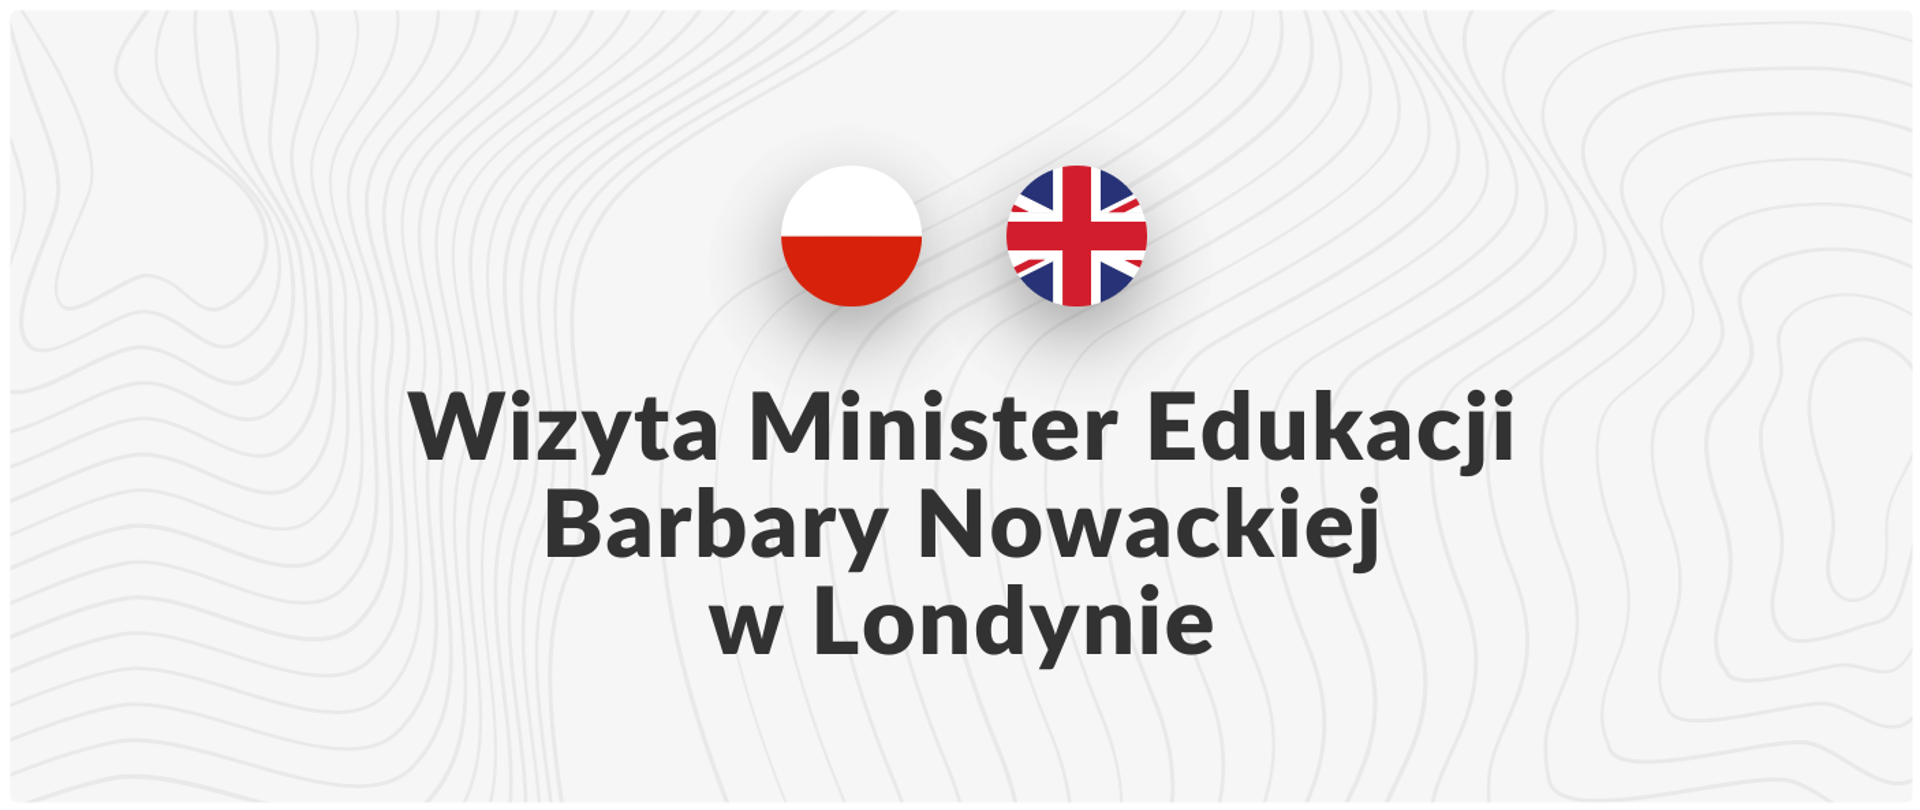 Wizyta Minister Edukacji Barbary Nowackiej w Londynie